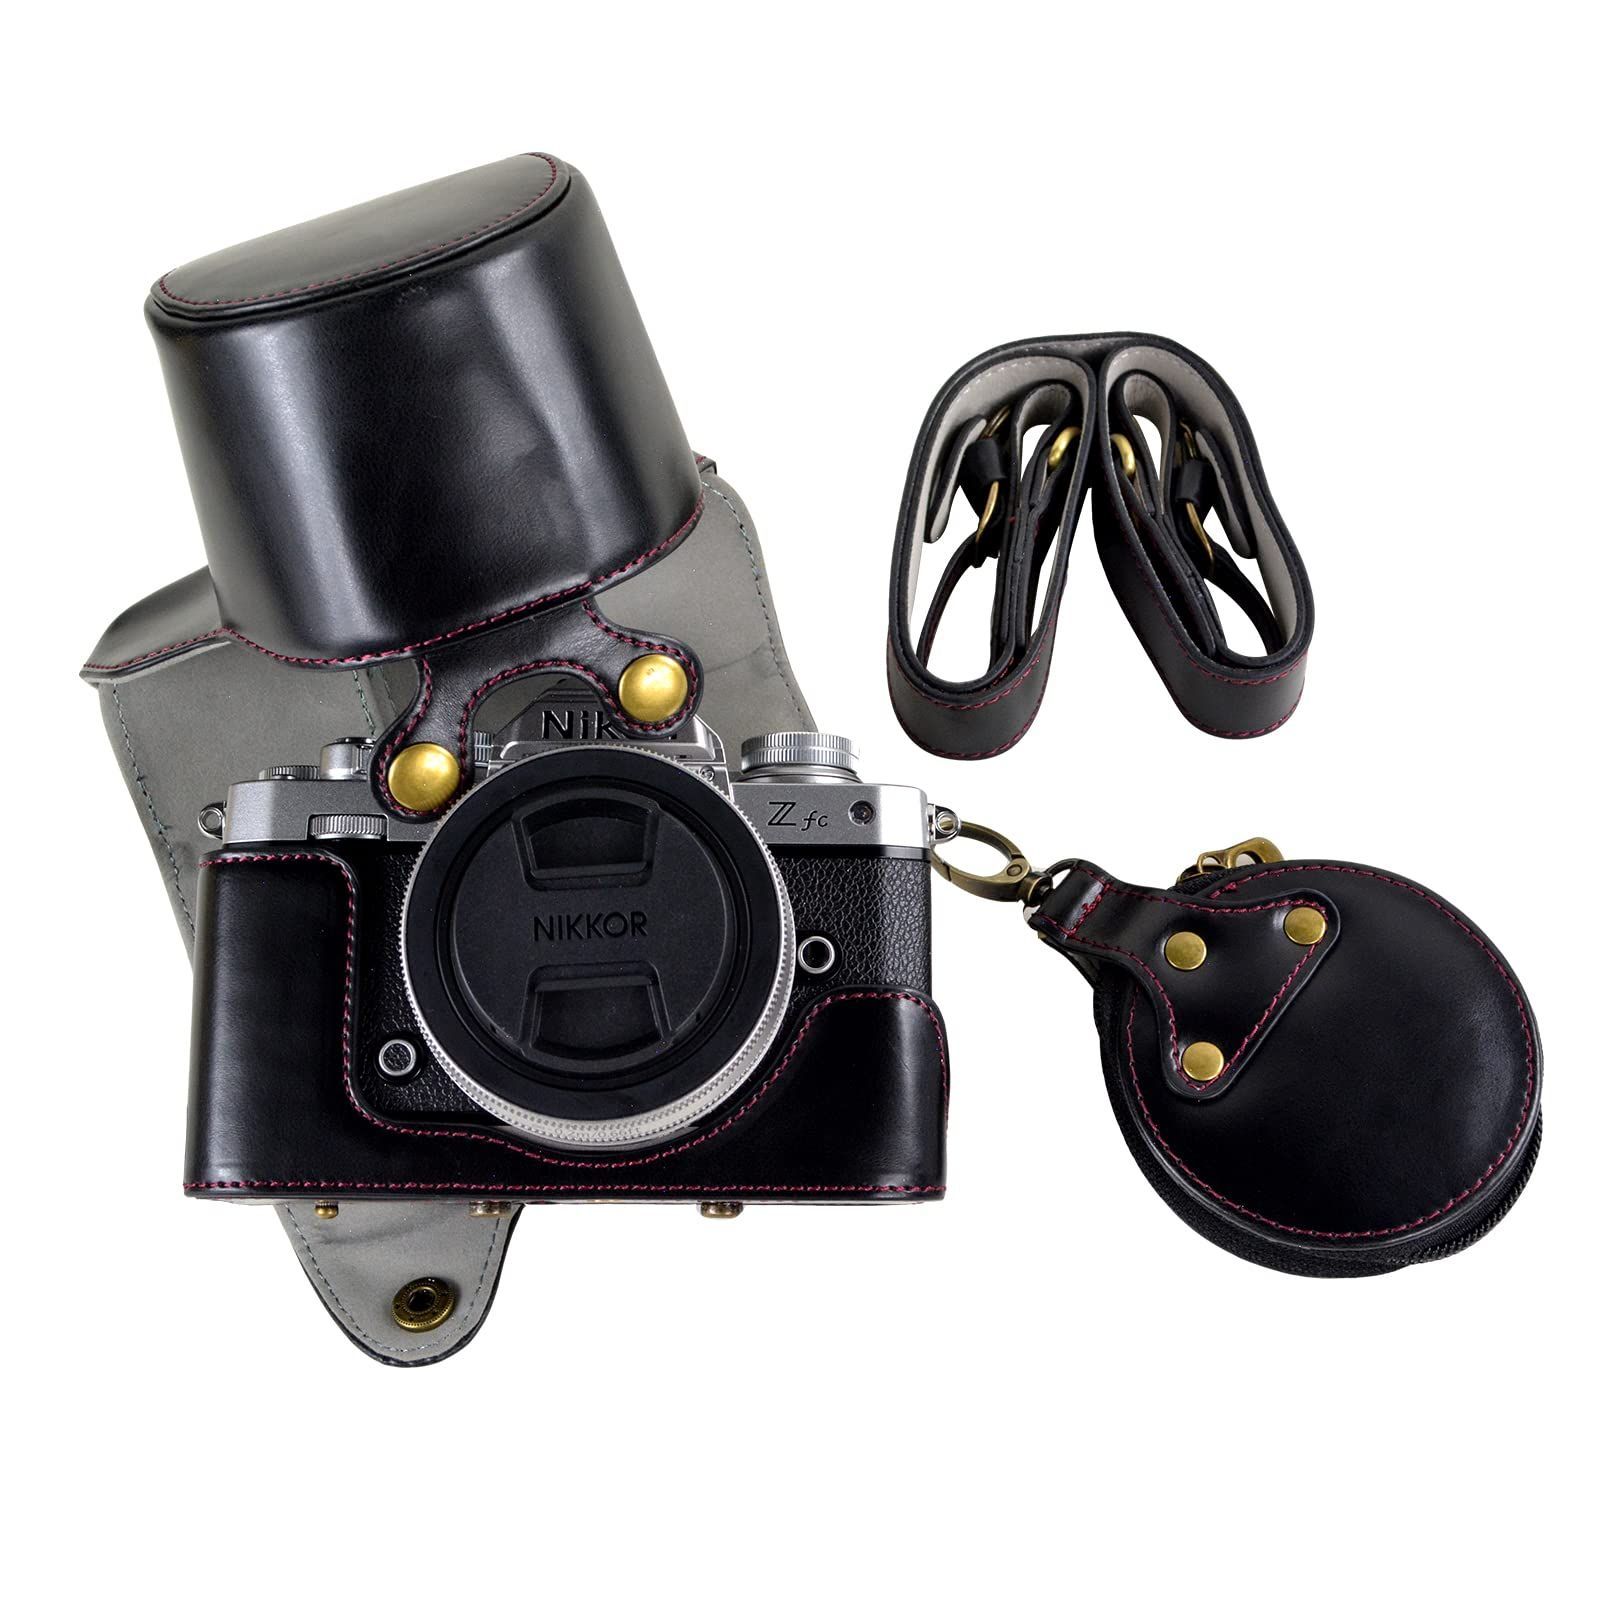 【数量限定】kinokoo Nikonミラーレス一眼カメラZ fc ケース zfc ケース 28mm/16-50mmレンズ対応 zfc カメラケース  ストラップ付き カメラ保護ケース バッテリー交換可 三脚ネジ穴付き PUレザー(ブラック)